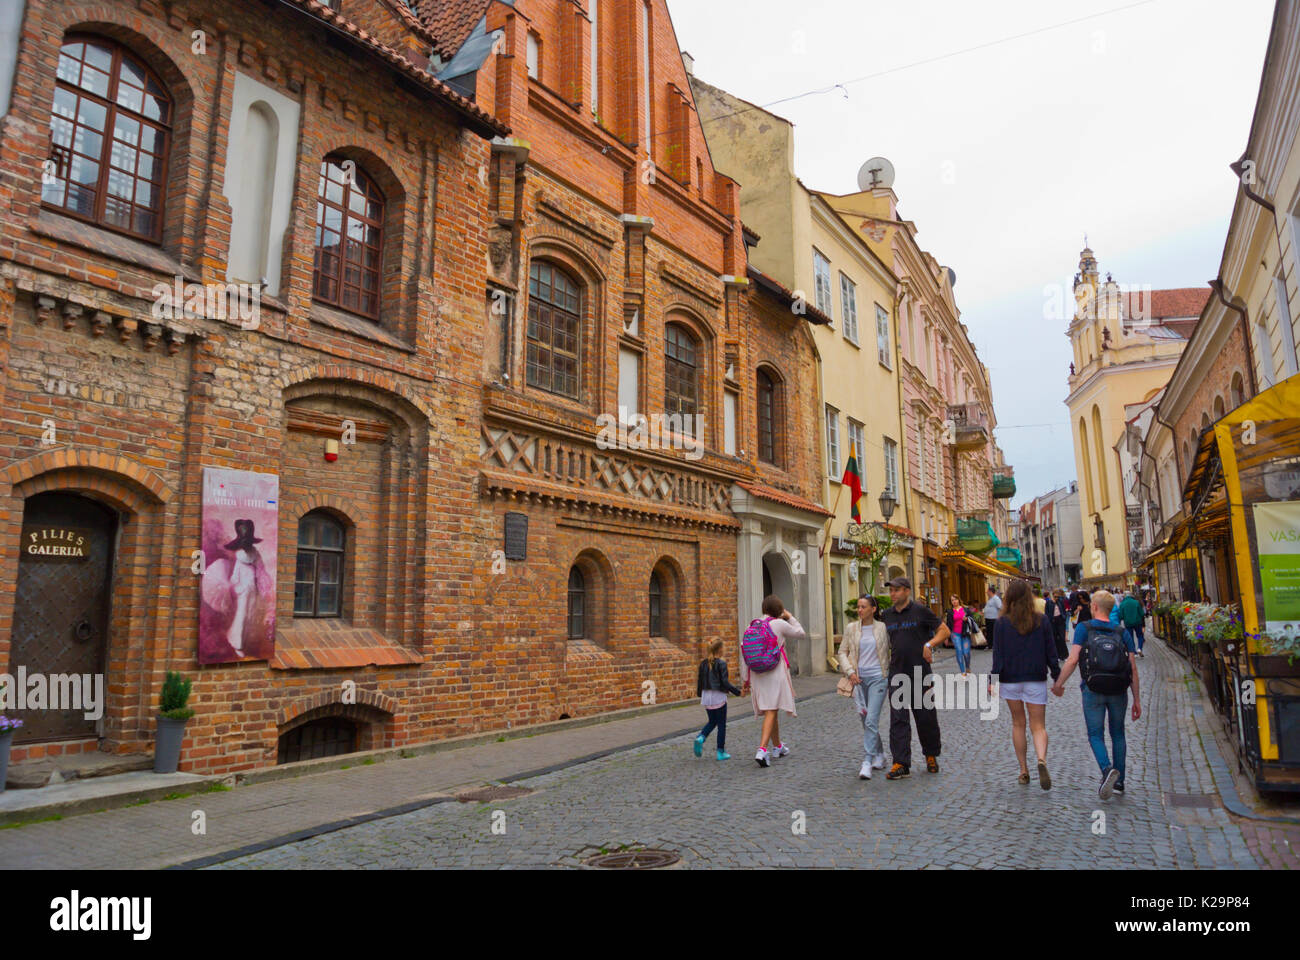 Pilies gatve, old town, Vilnius, Lithuania Stock Photo